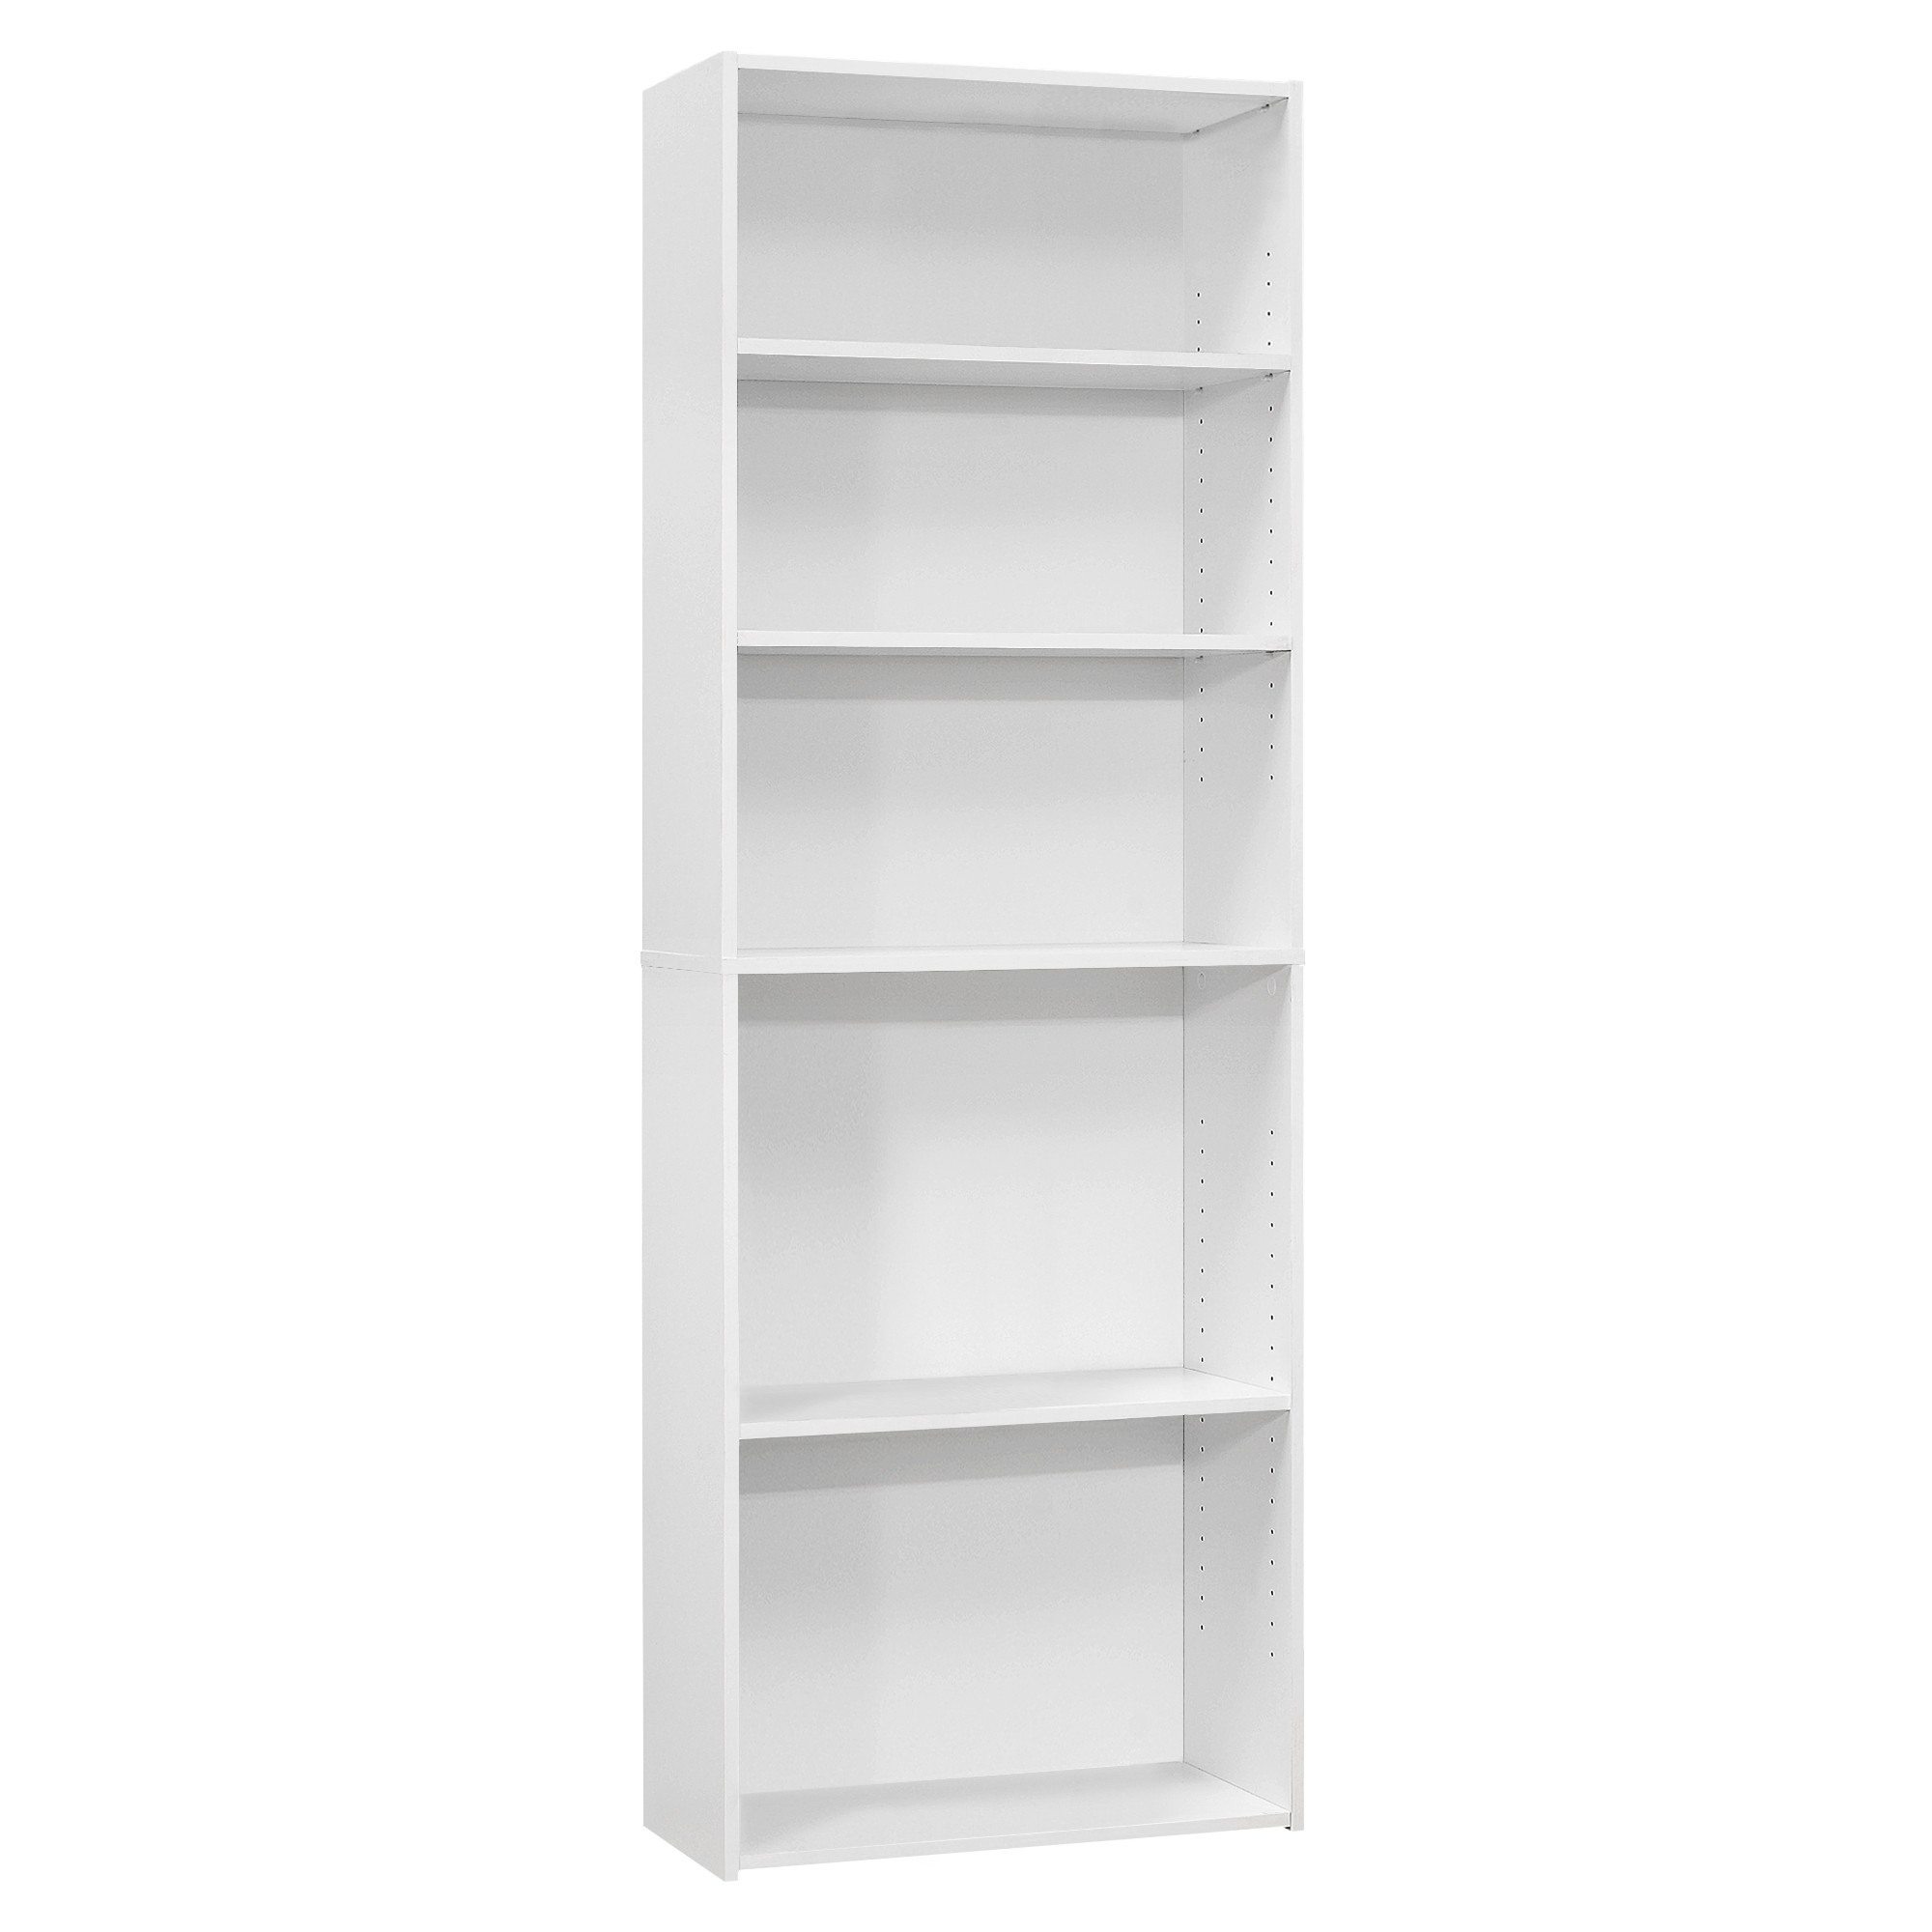 11.75" x 24.75" x 71.25" White 5 Shelves Bookcase